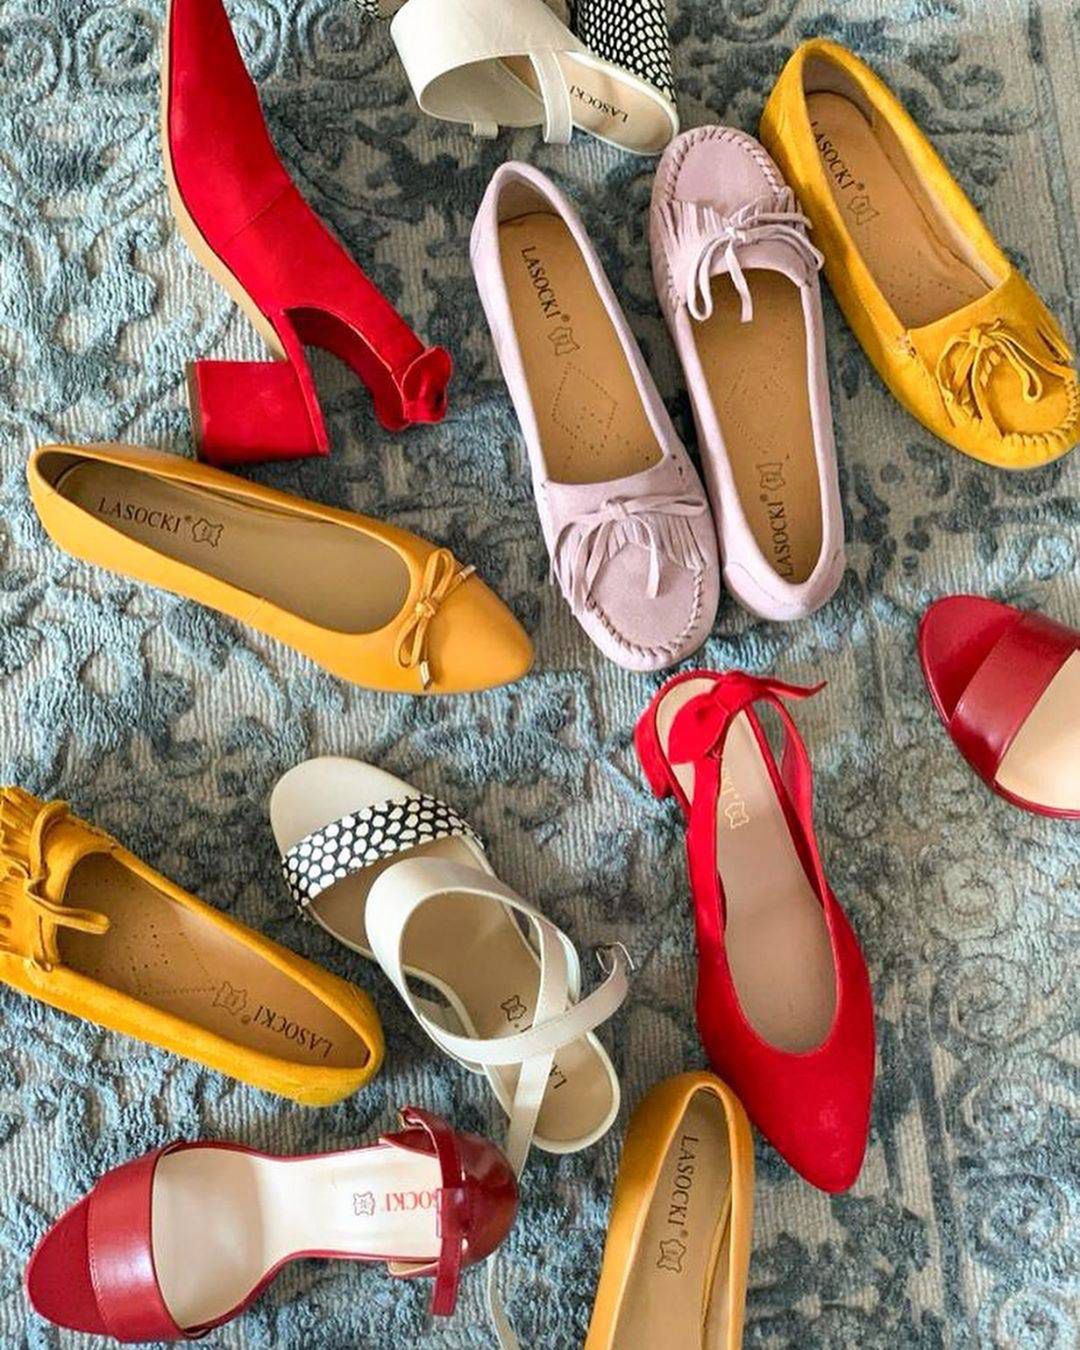 Małgorzata Kożuchowska ma sporą kolekcję butów. Wśród nich modele z sieciówki